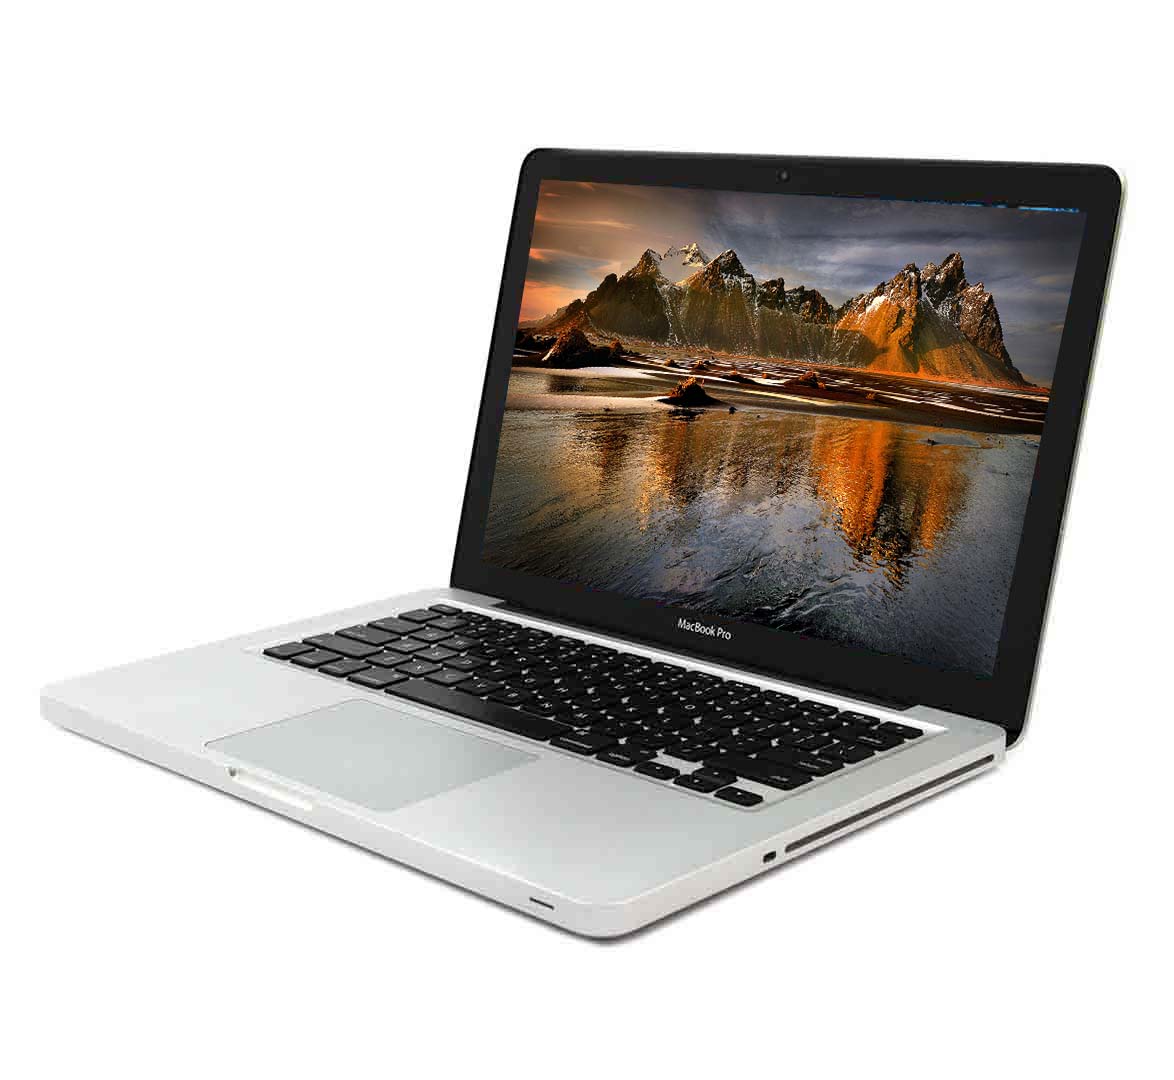 Apple MacBook Pro A1278 Core i7 (2012) - Memoire 8GB DDR3 - Disque